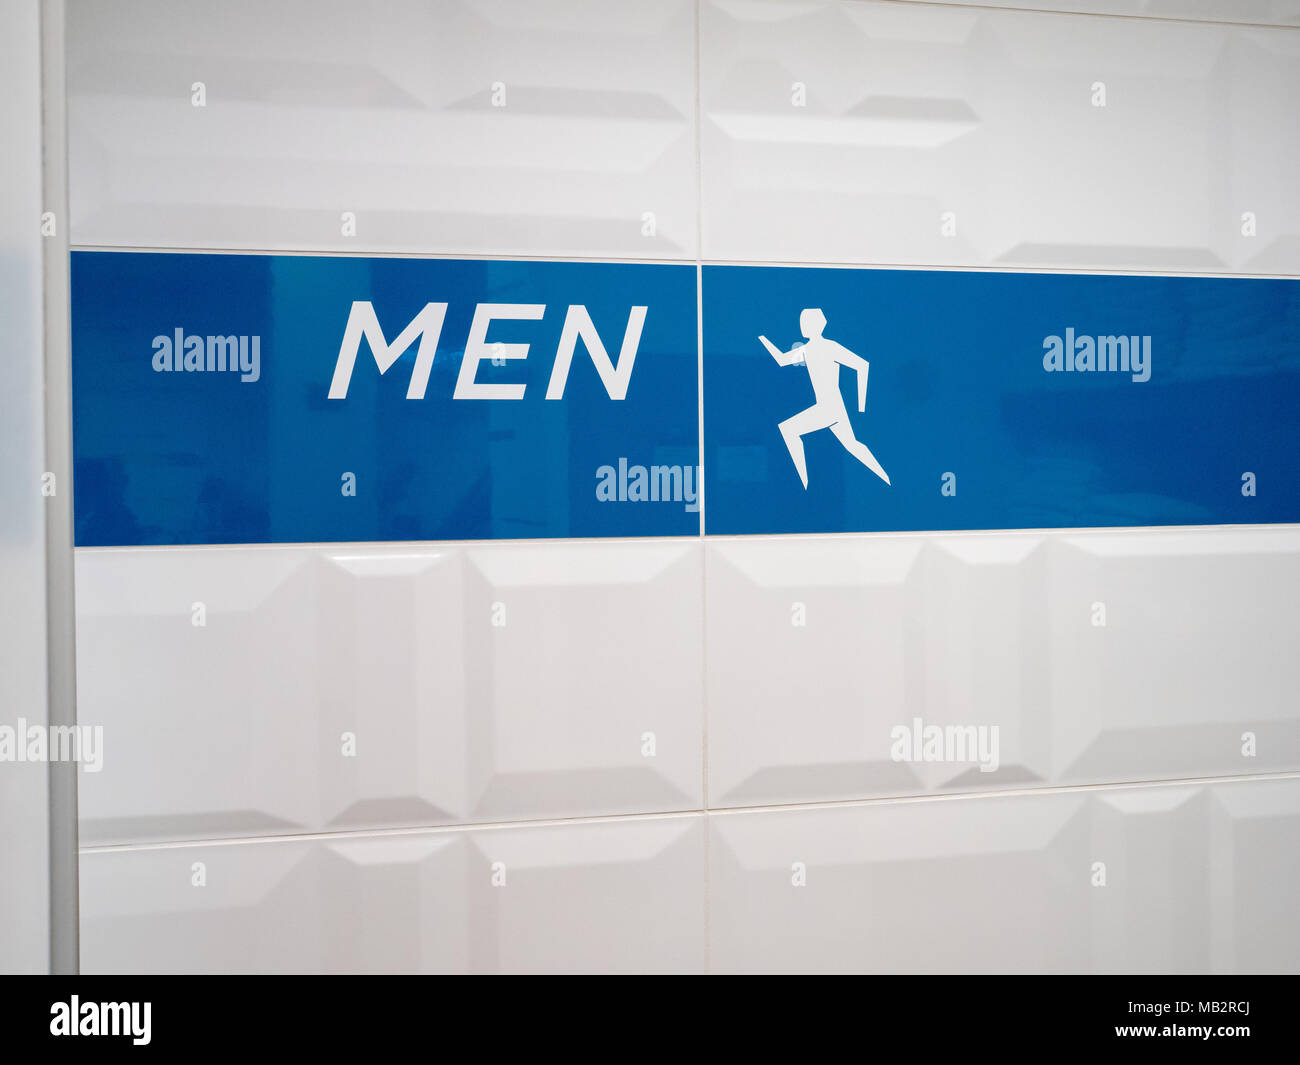 Men's locker room entrance sign in modern office setting Stock Photo